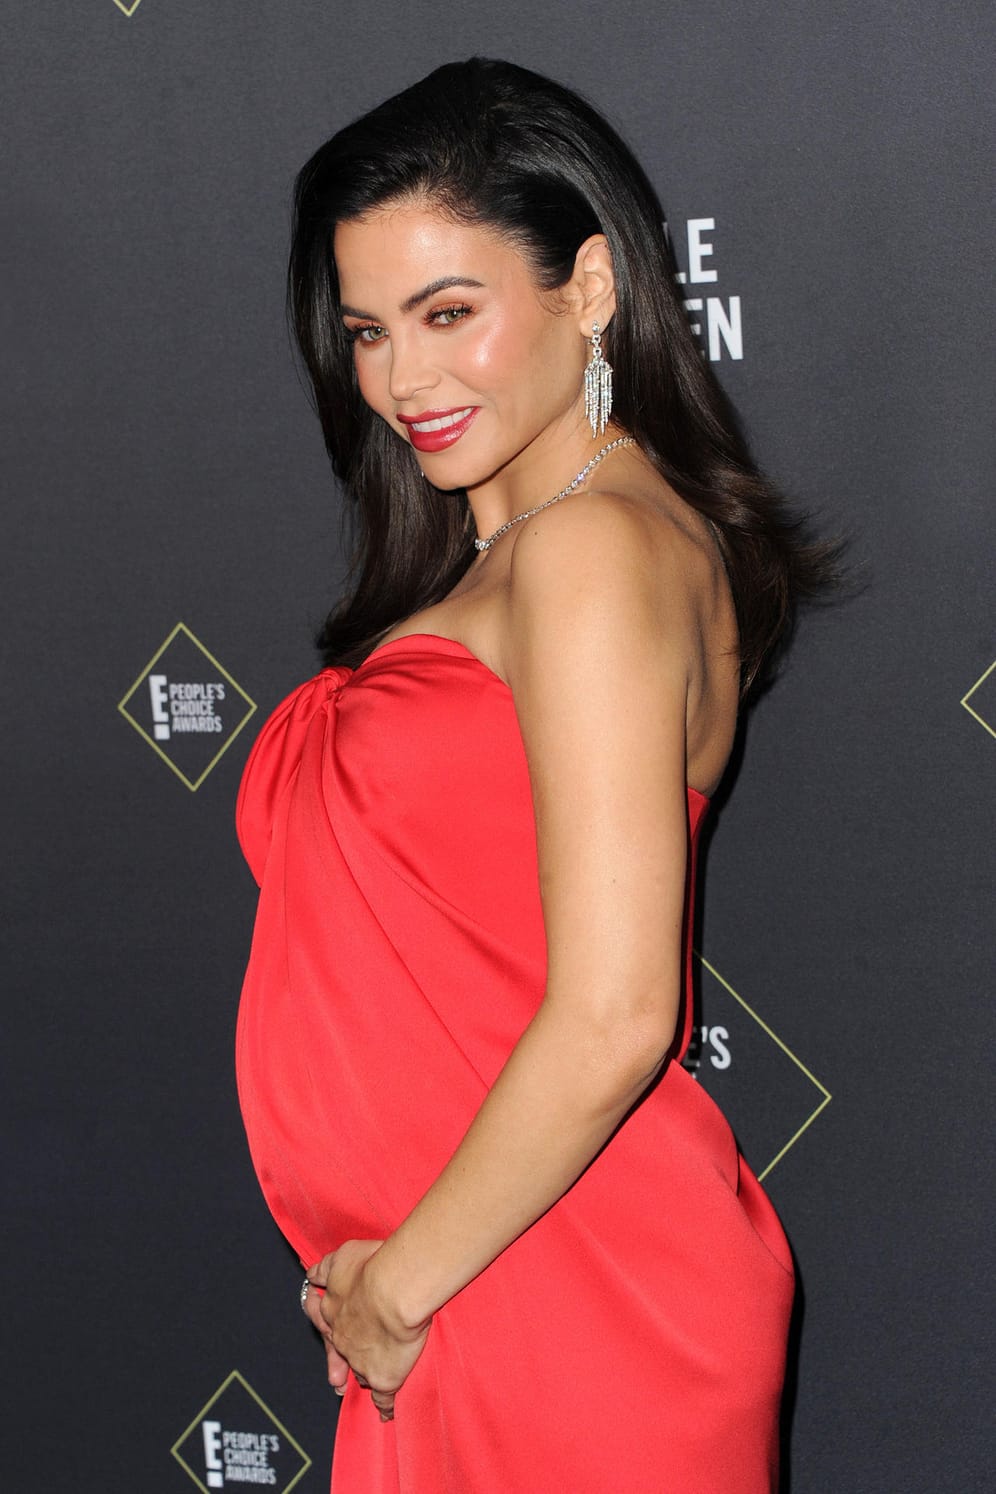 Die Tänzerin Jenna Dewan erwartet mit ihrem neuen Freund Steve Kazee ihr erstes gemeinsames Baby.